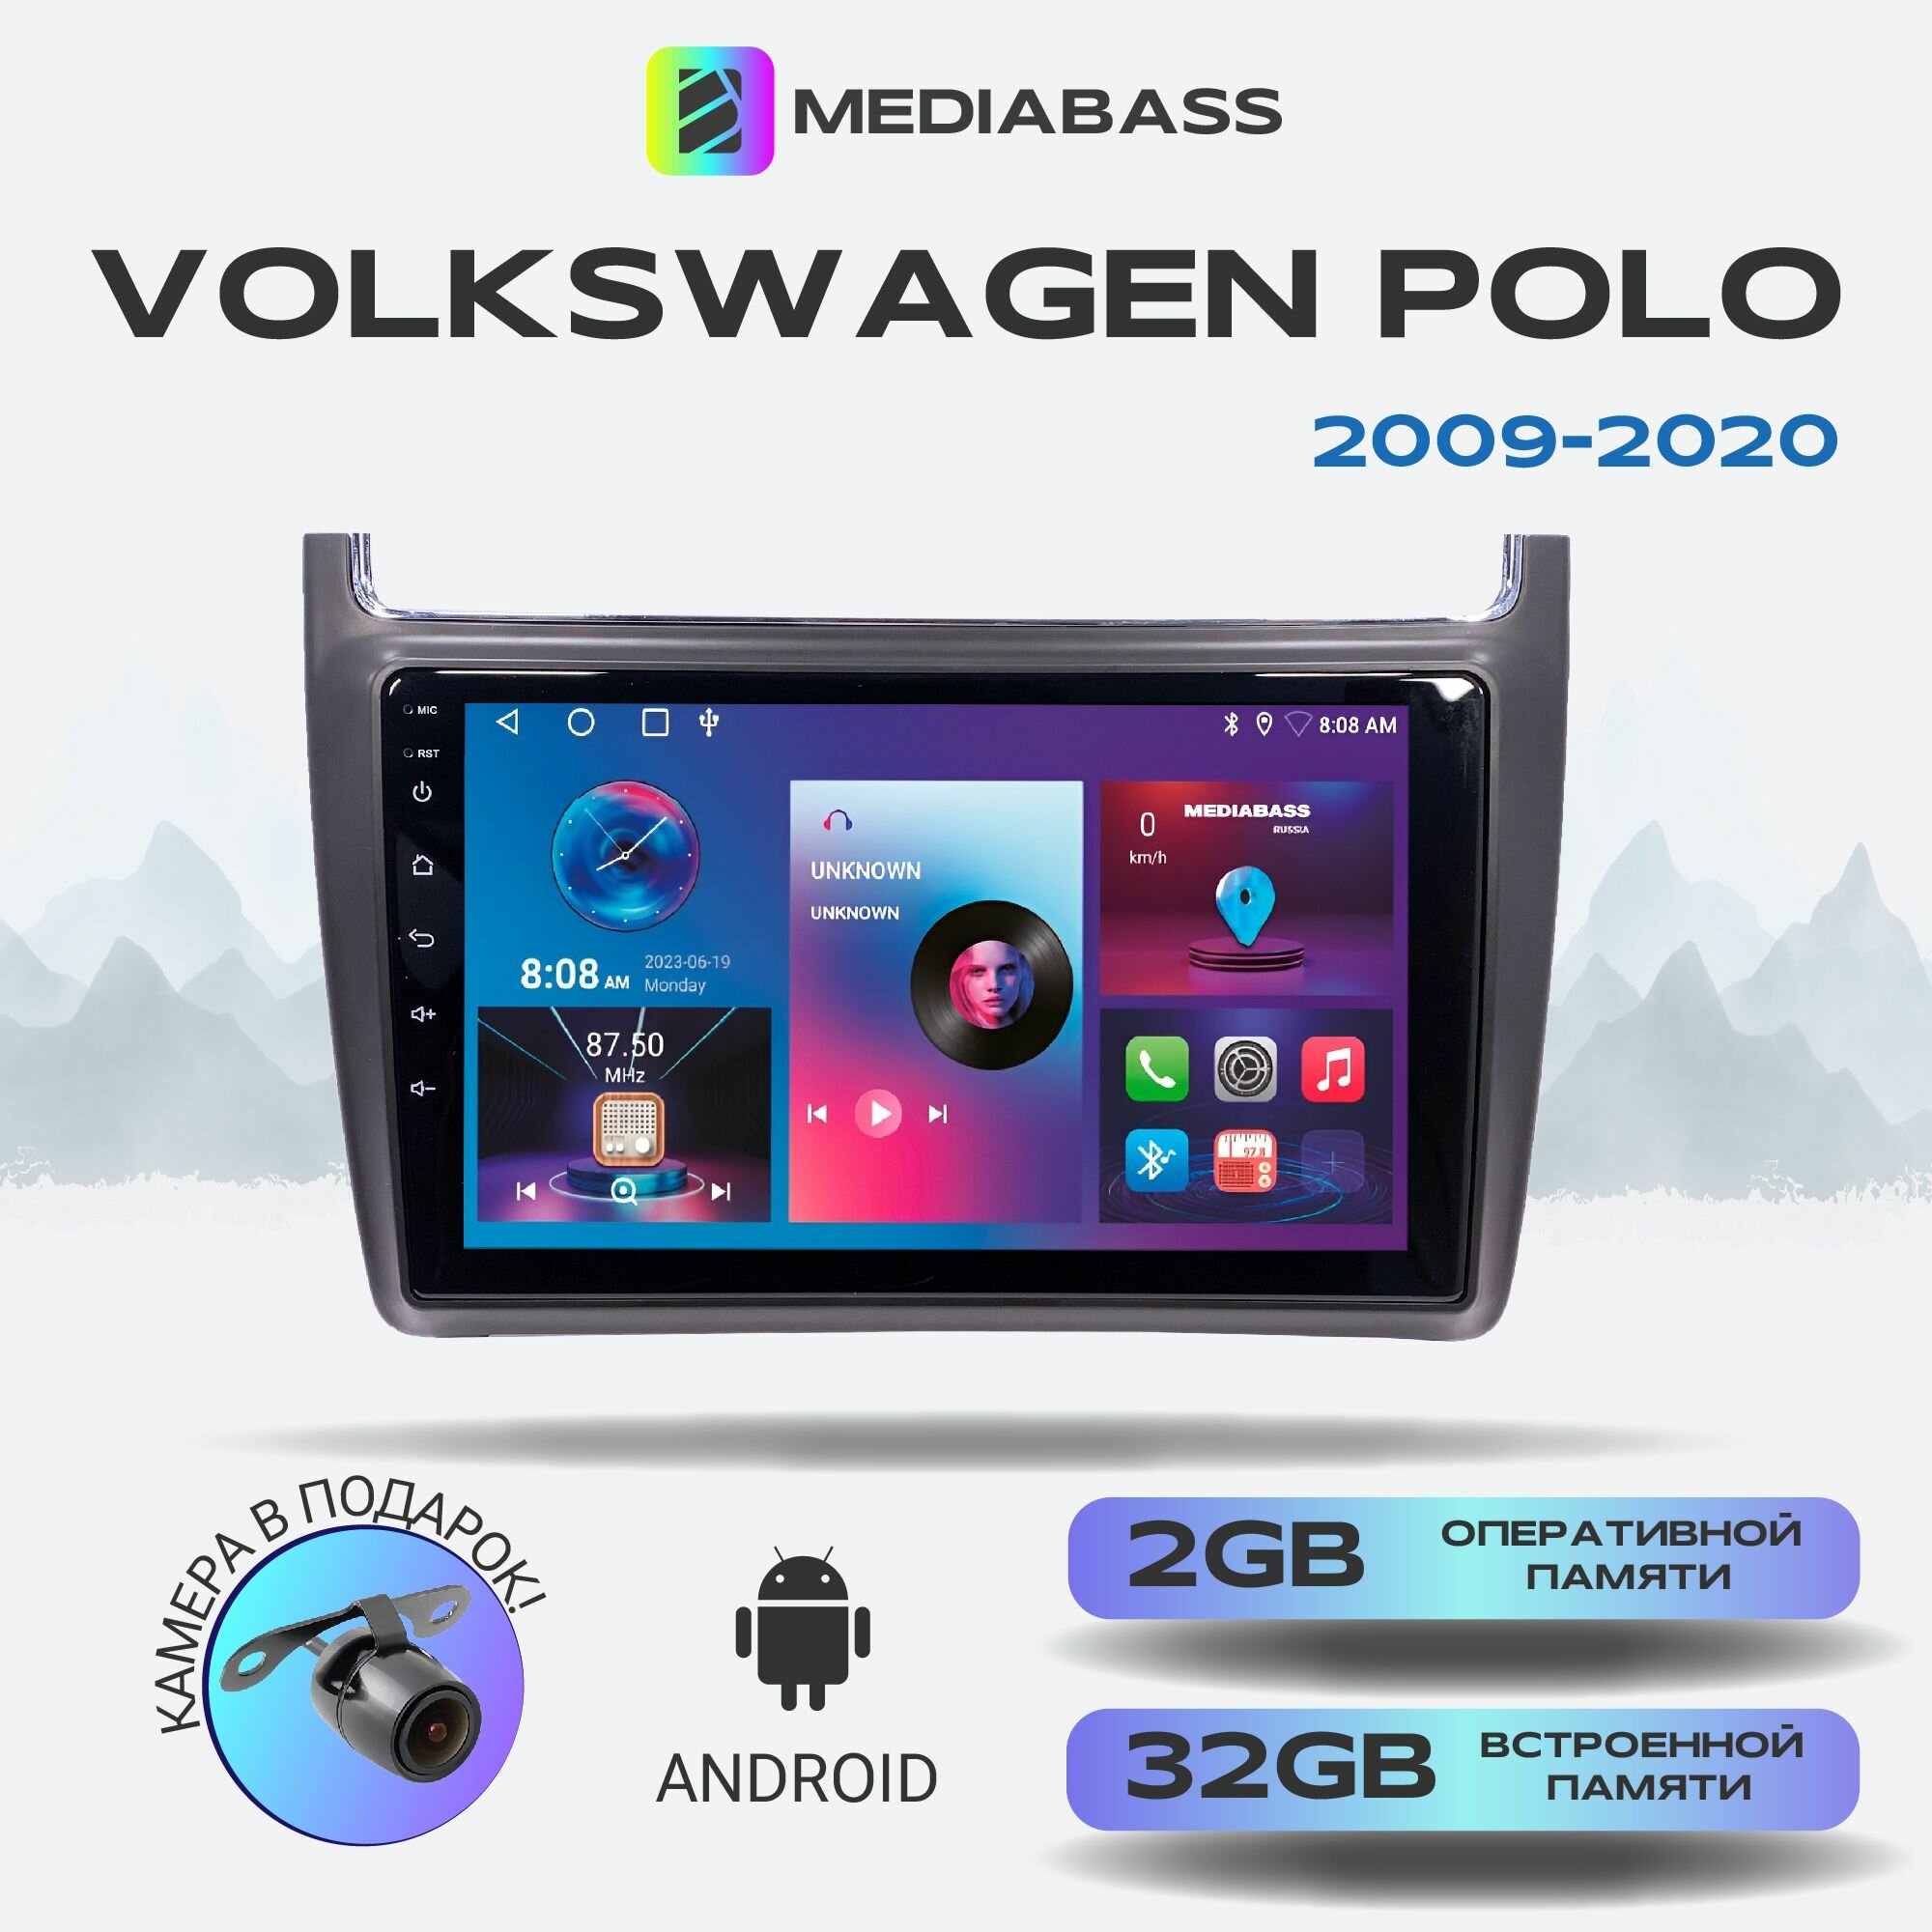 Автомагнитола Mediabass Volkswagen Polo 2009-2020, Android 12, 2/32ГБ, 4-ядерный процессор, QLED экран с разрешением 1280*720, чип-усилитель YD7388 / Фольксваген Поло